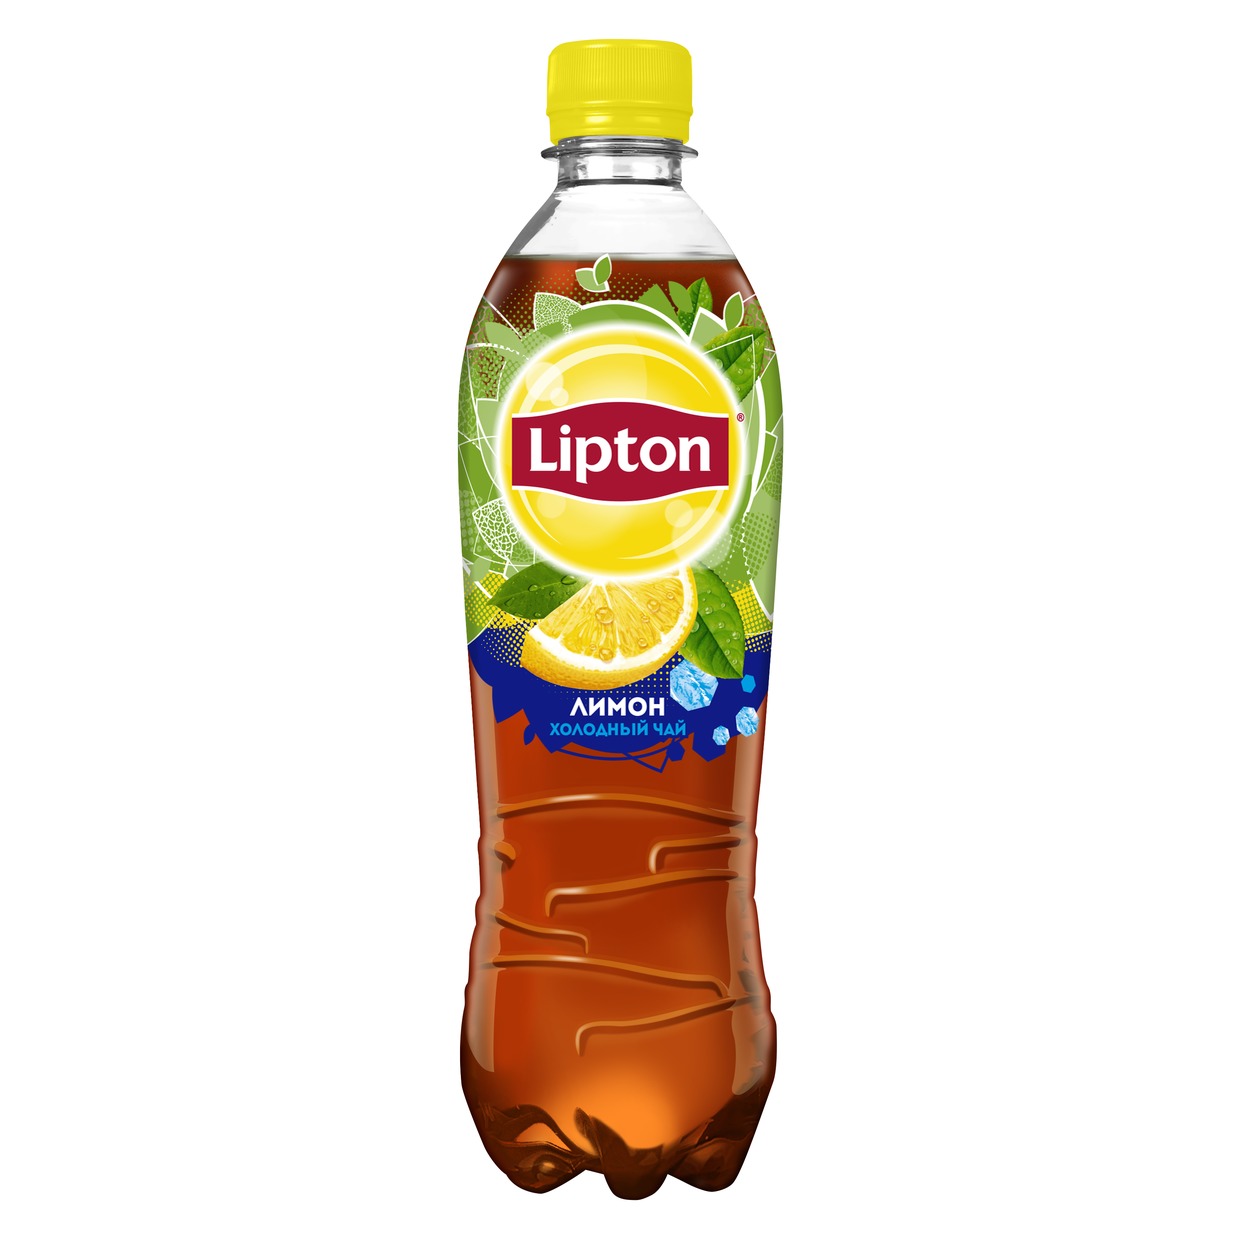 Акция в Пятерочке на Холодный Чай Lipton, лимон, 0,5 л